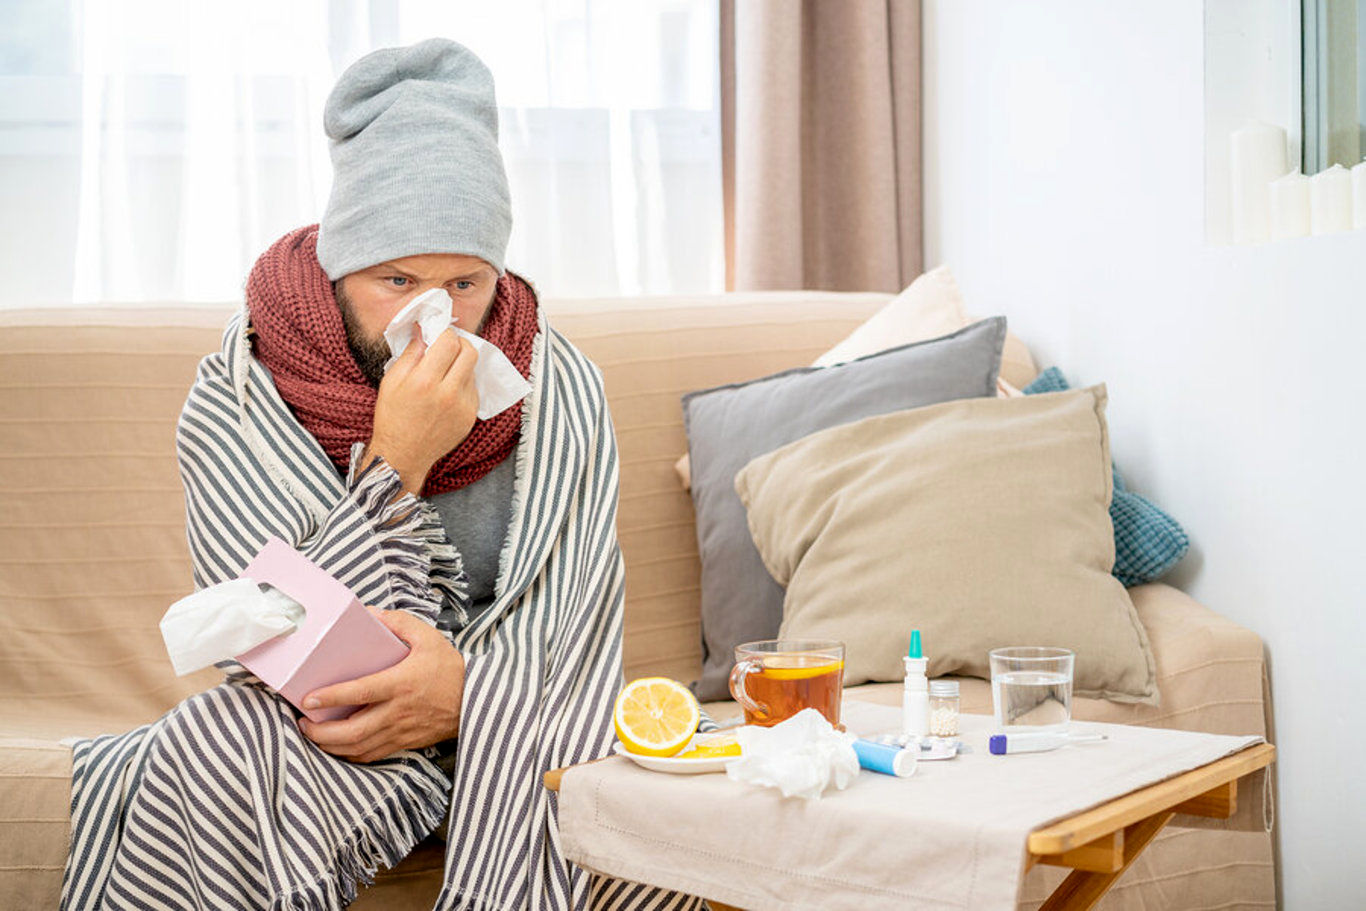 اینفوگرافی/ چند راه ساده برای مقابله با سرماخوردگی